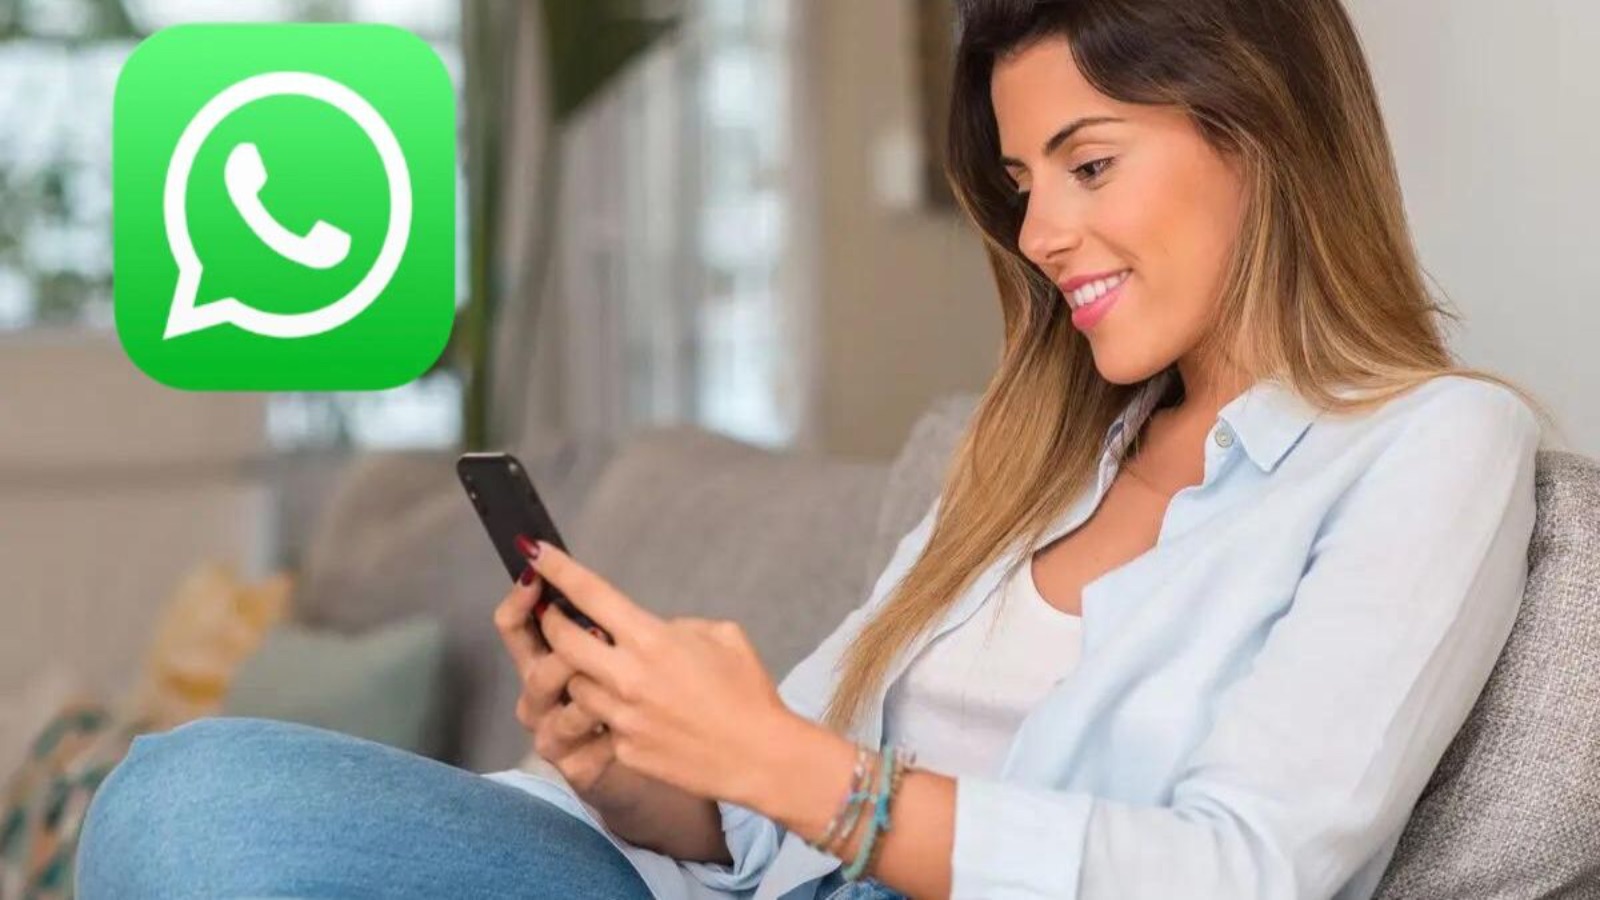 WhatsApp, pericolo SPIONAGGIO per tutti con un'app segreta